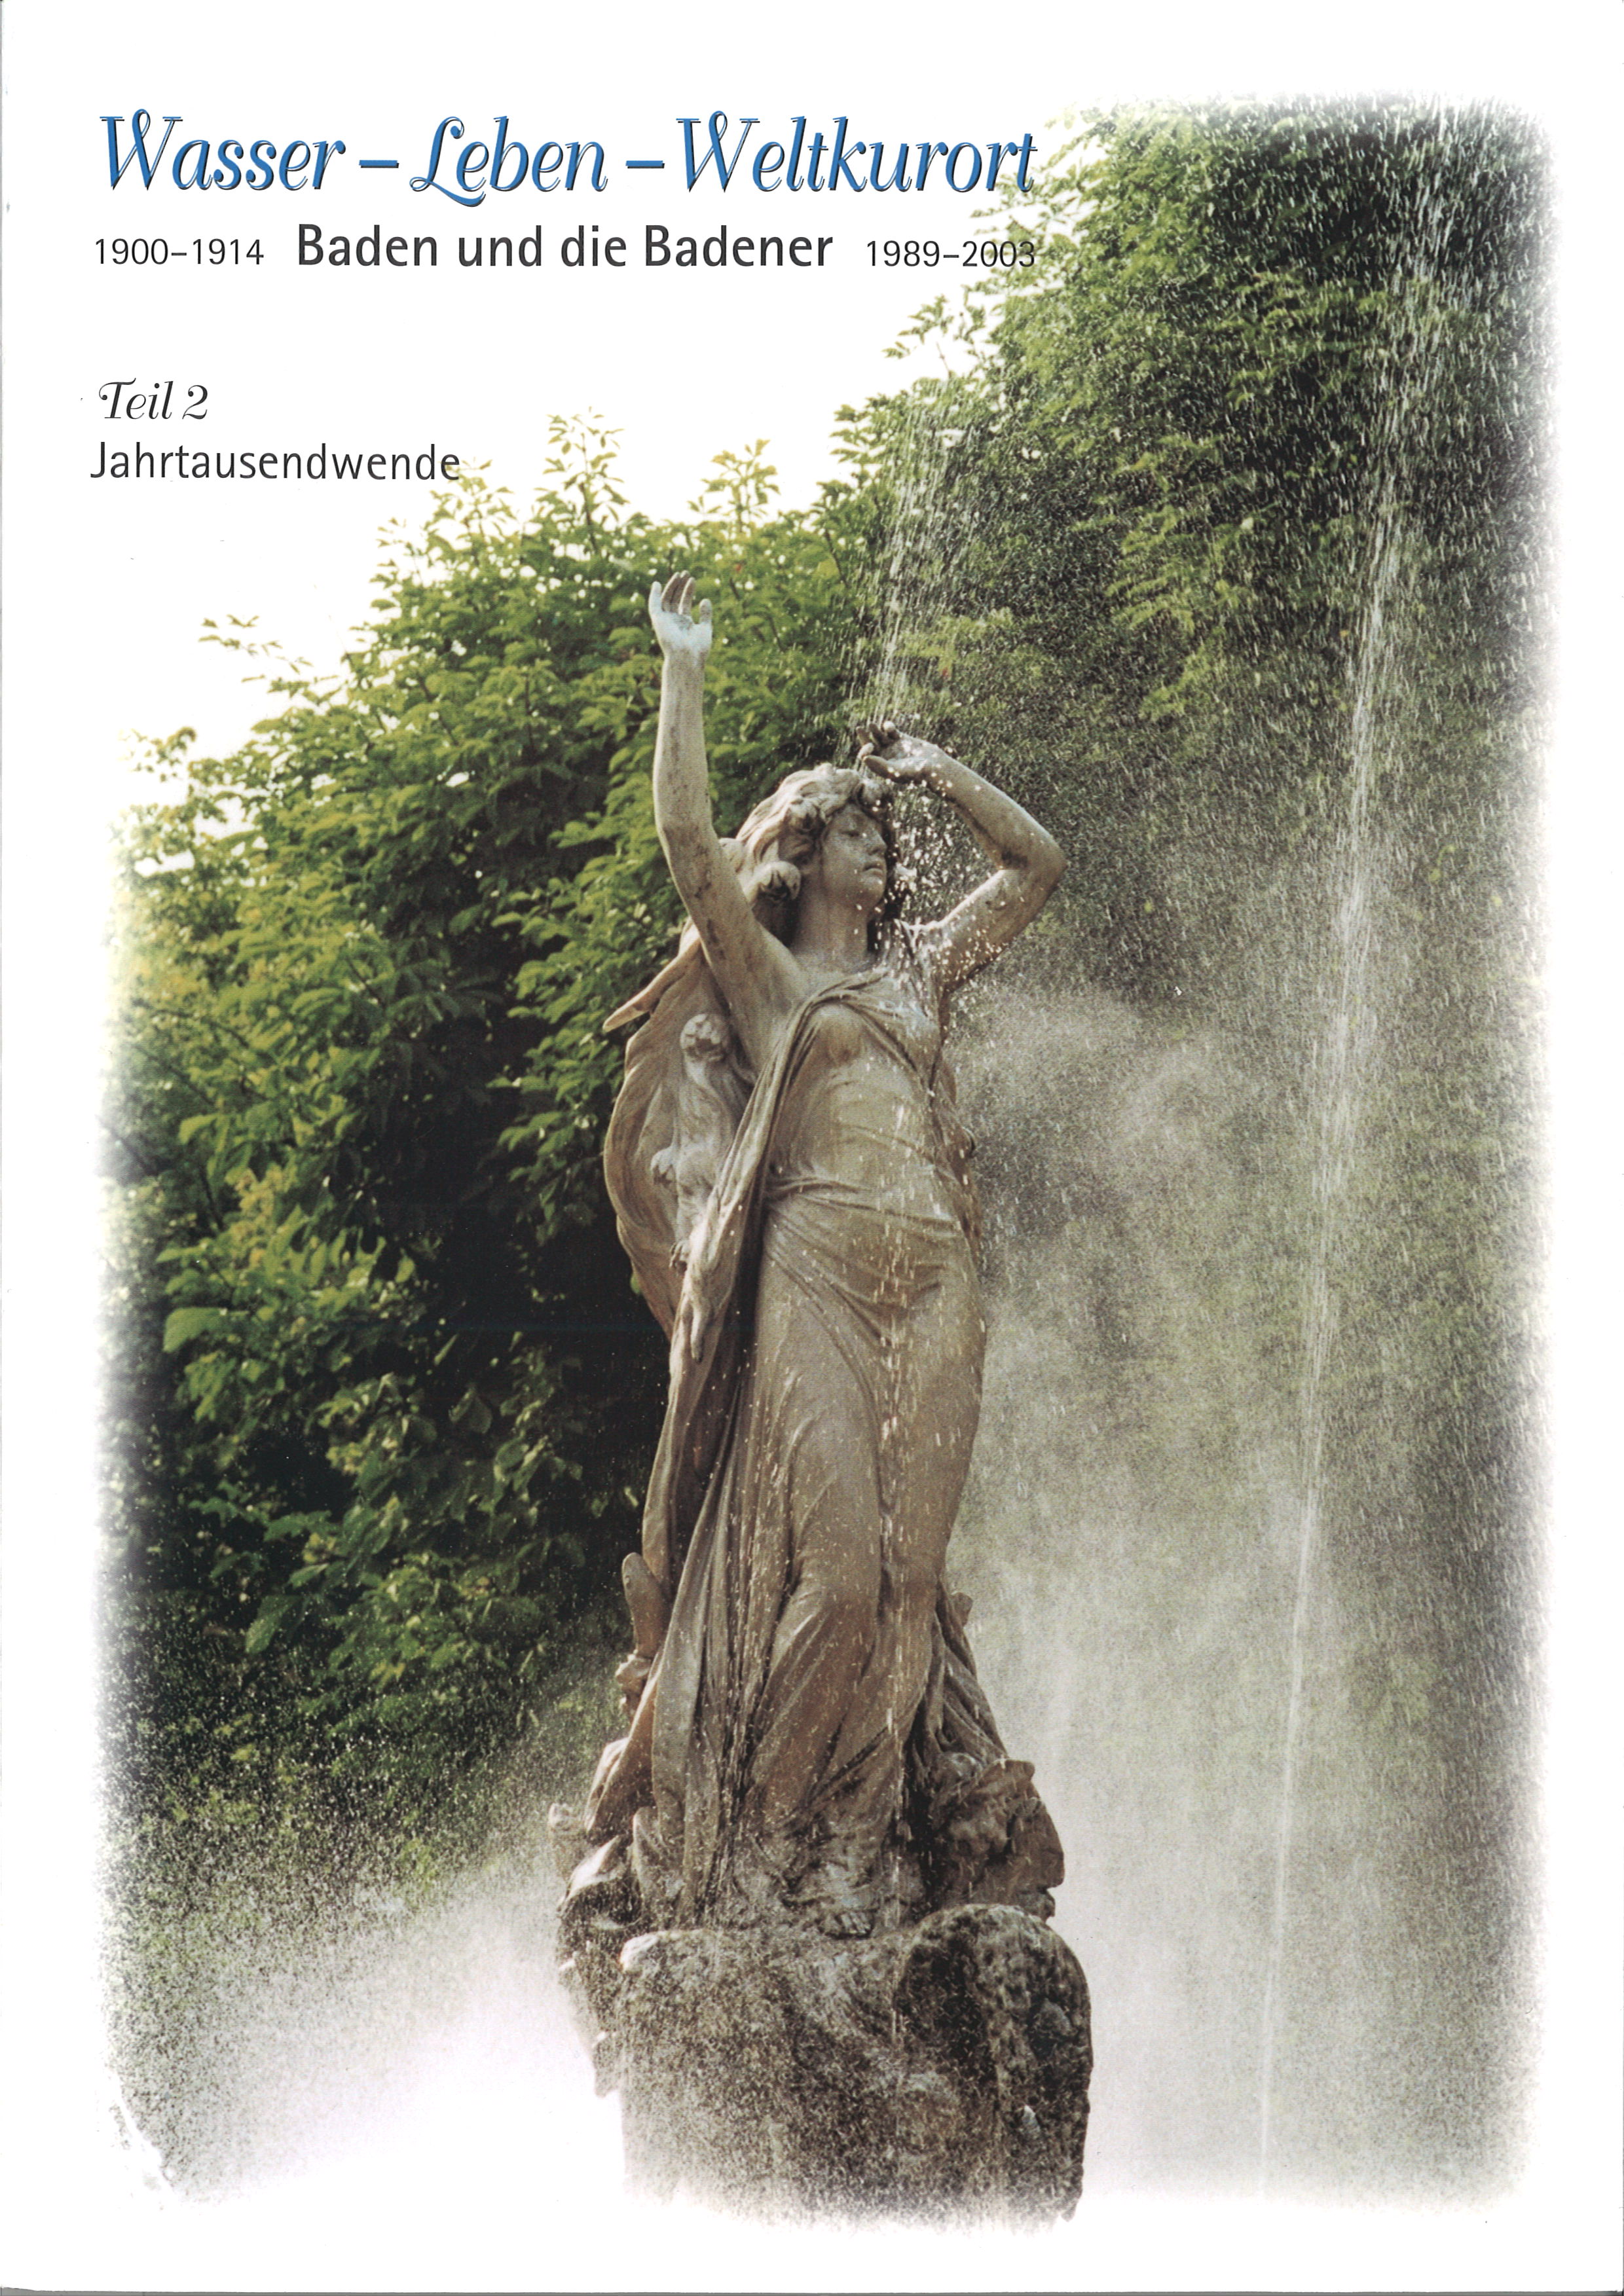 Wasser – Leben – Weltkulturort Baden und die Badener, Teil 1, 1900 – 1914, 271 Seiten € 15,00